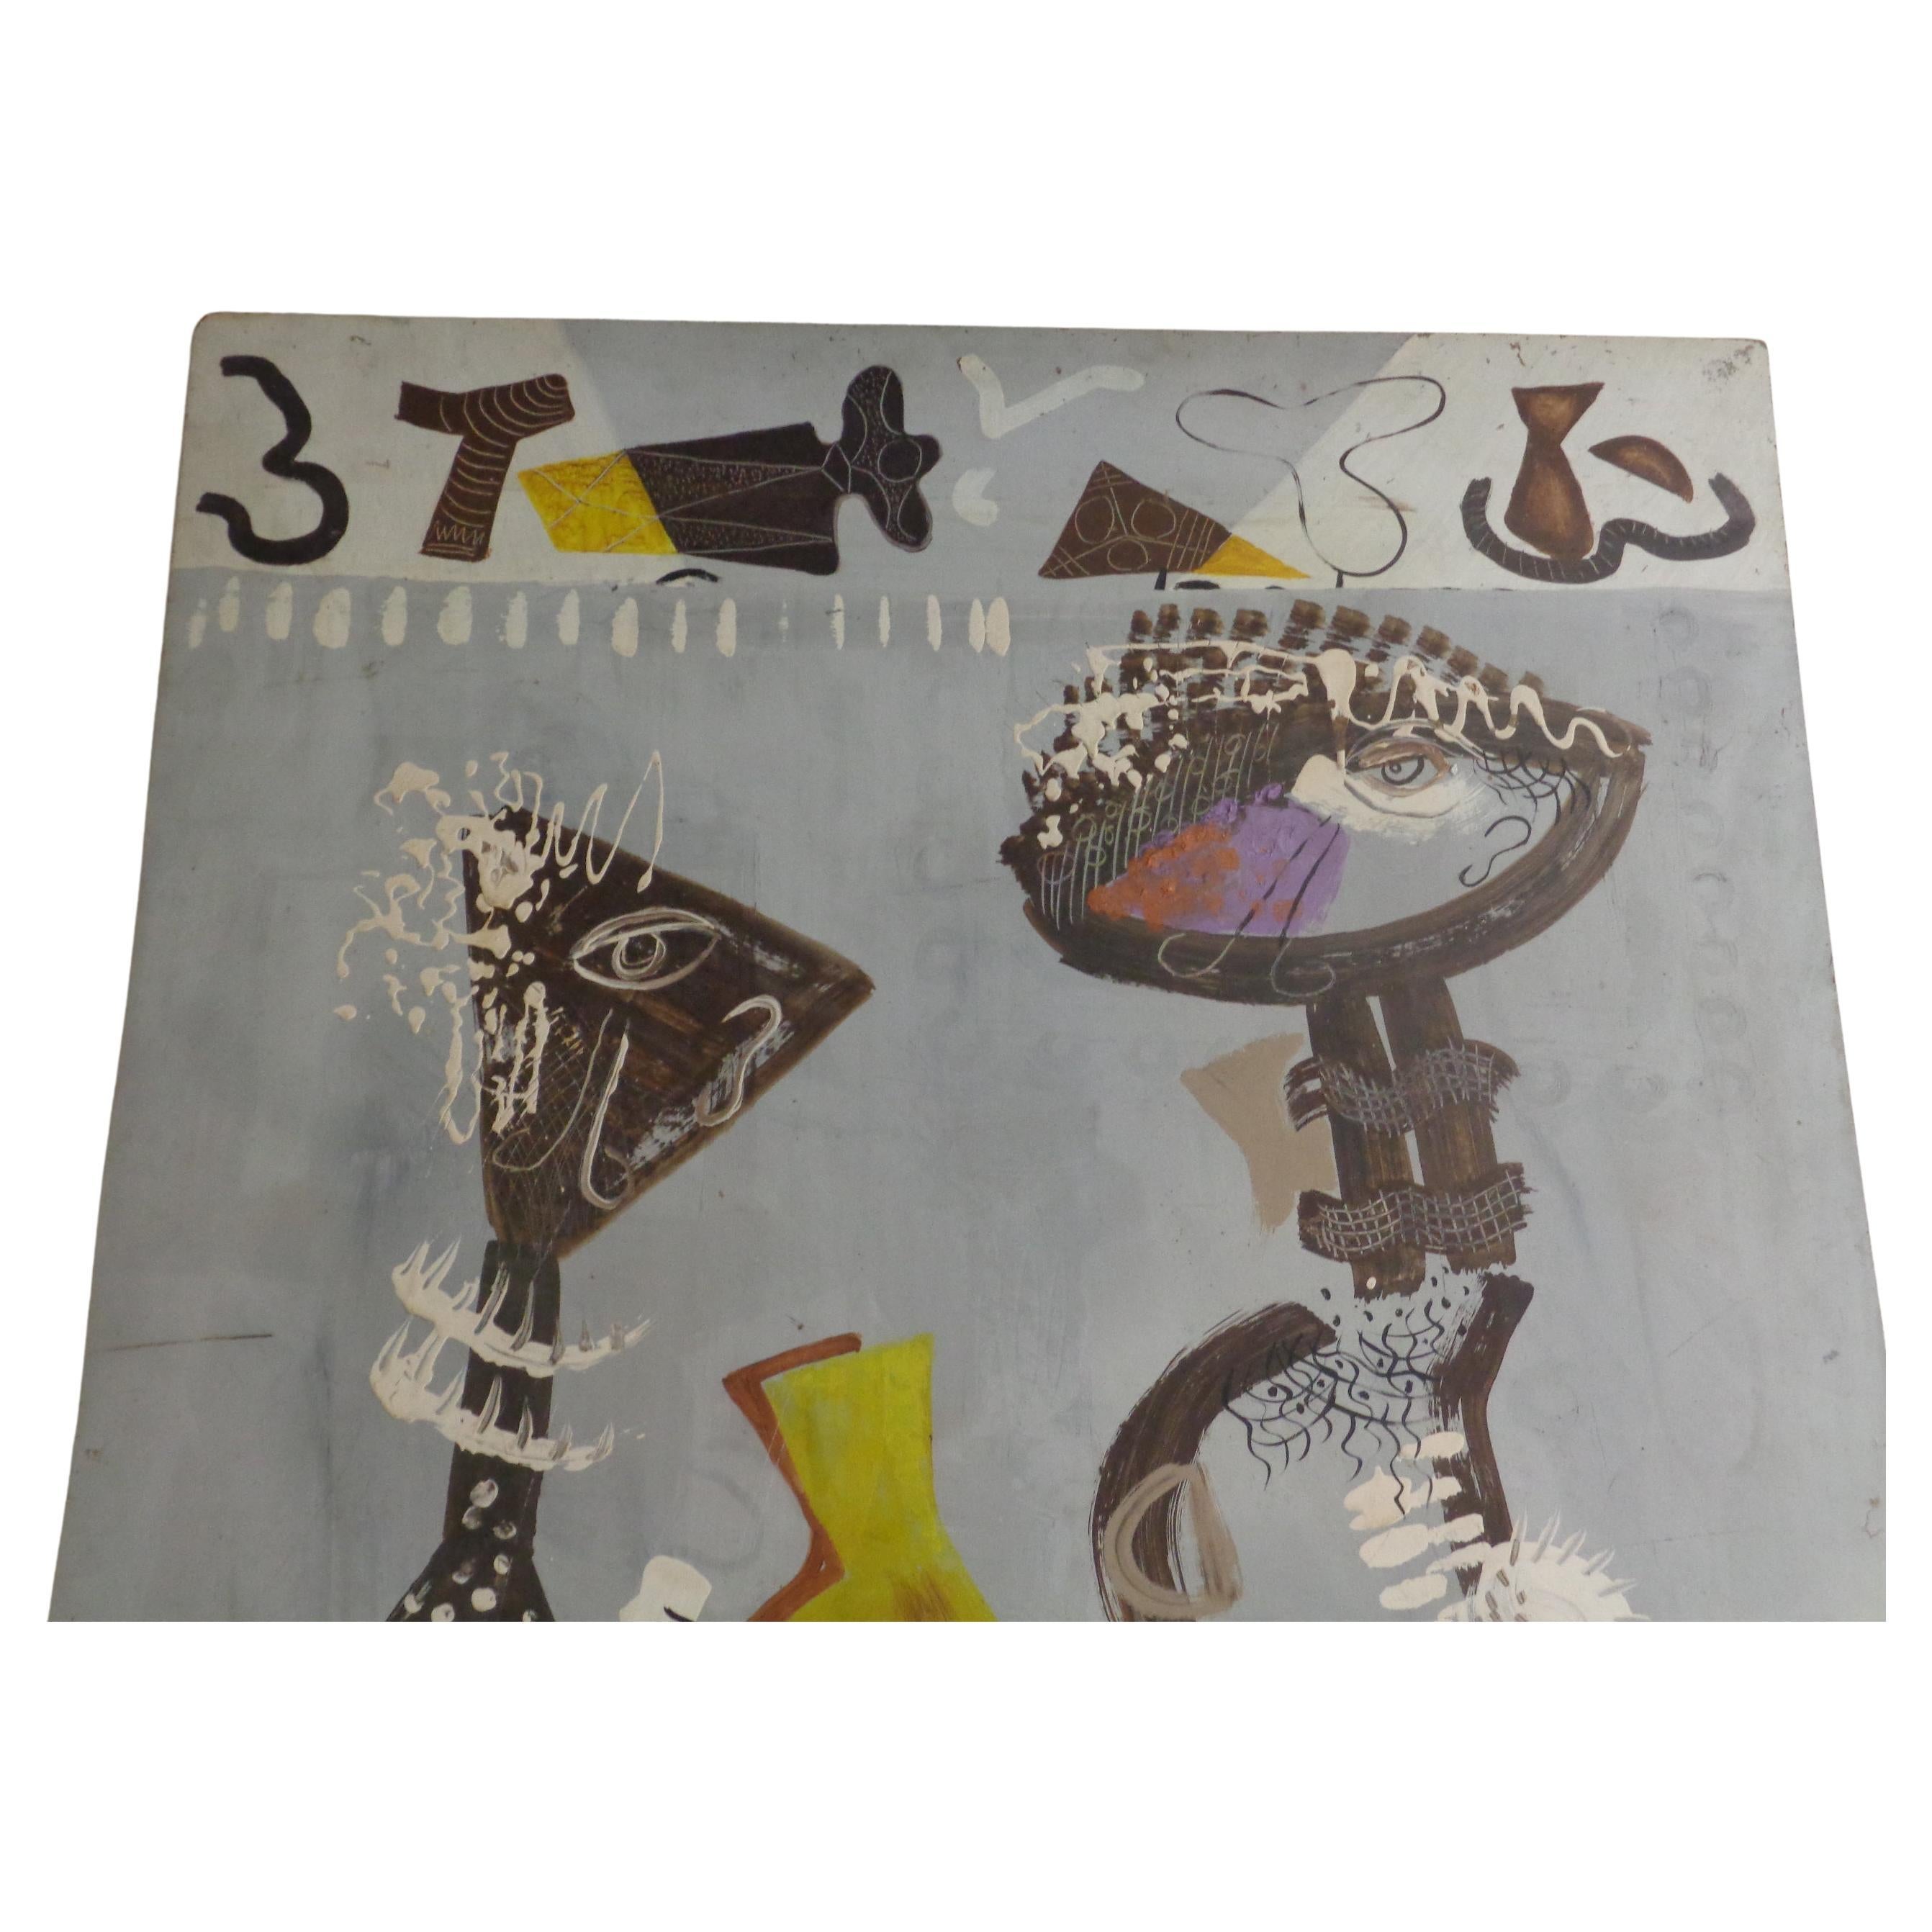 Peinture impressionniste abstraite à l'huile sur masonite de deux personnages avec des symboles par Zoute ( autoportrait de Zoute et de sa femme Thelma ) signée et datée en bas à droite - Zoute '49 ( né Leon Salter - 1903-1976, North Rose, NY )